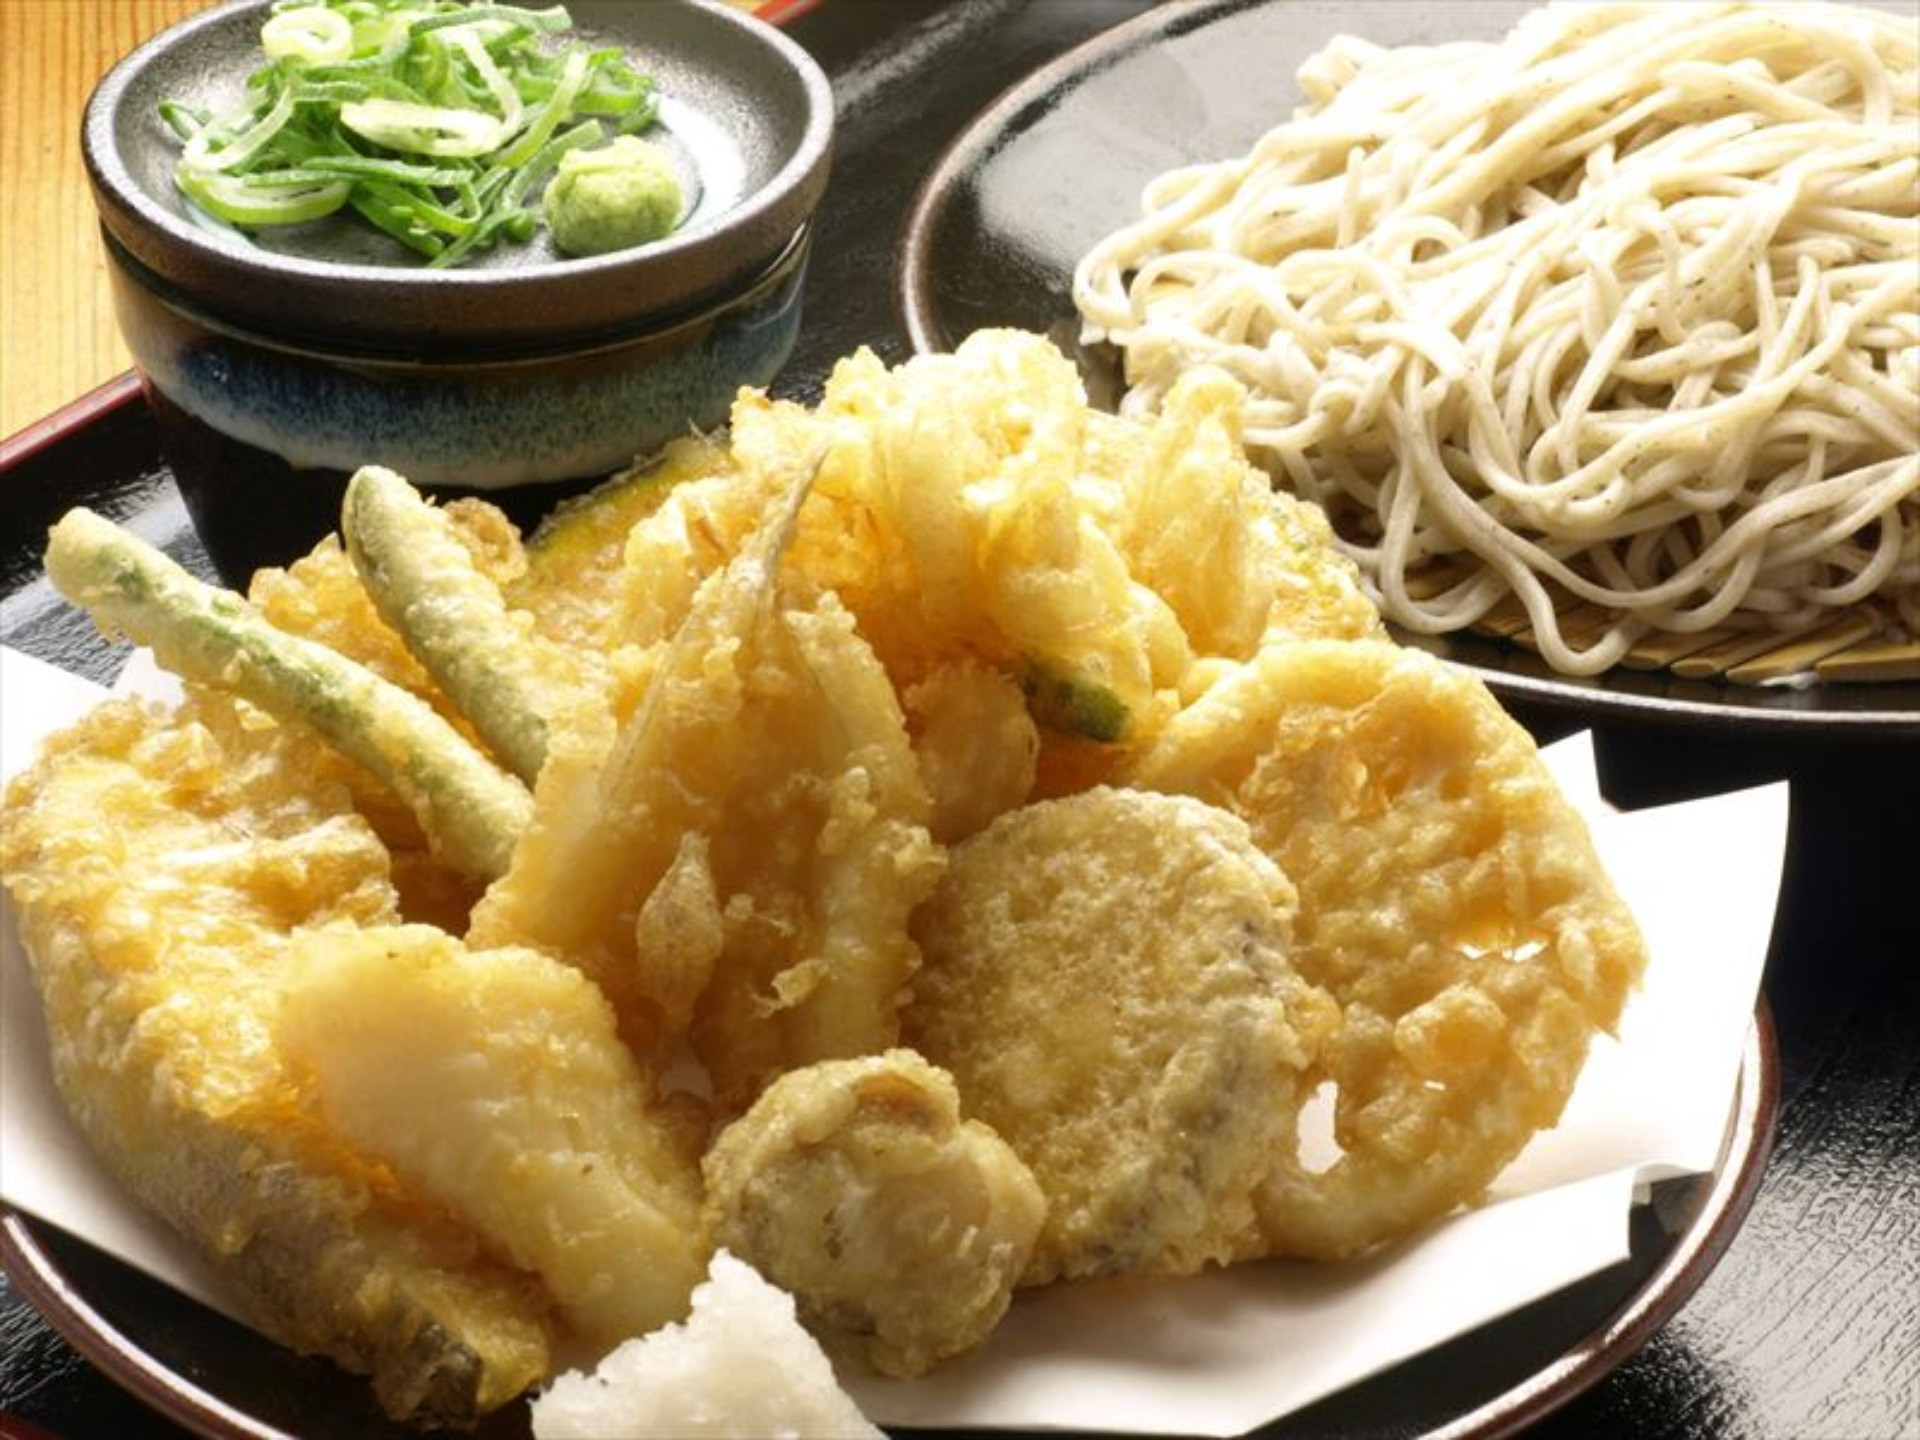 イカとホタテと白身魚の3種の天ぷらがのった脇役天丼は隠れた人気商品